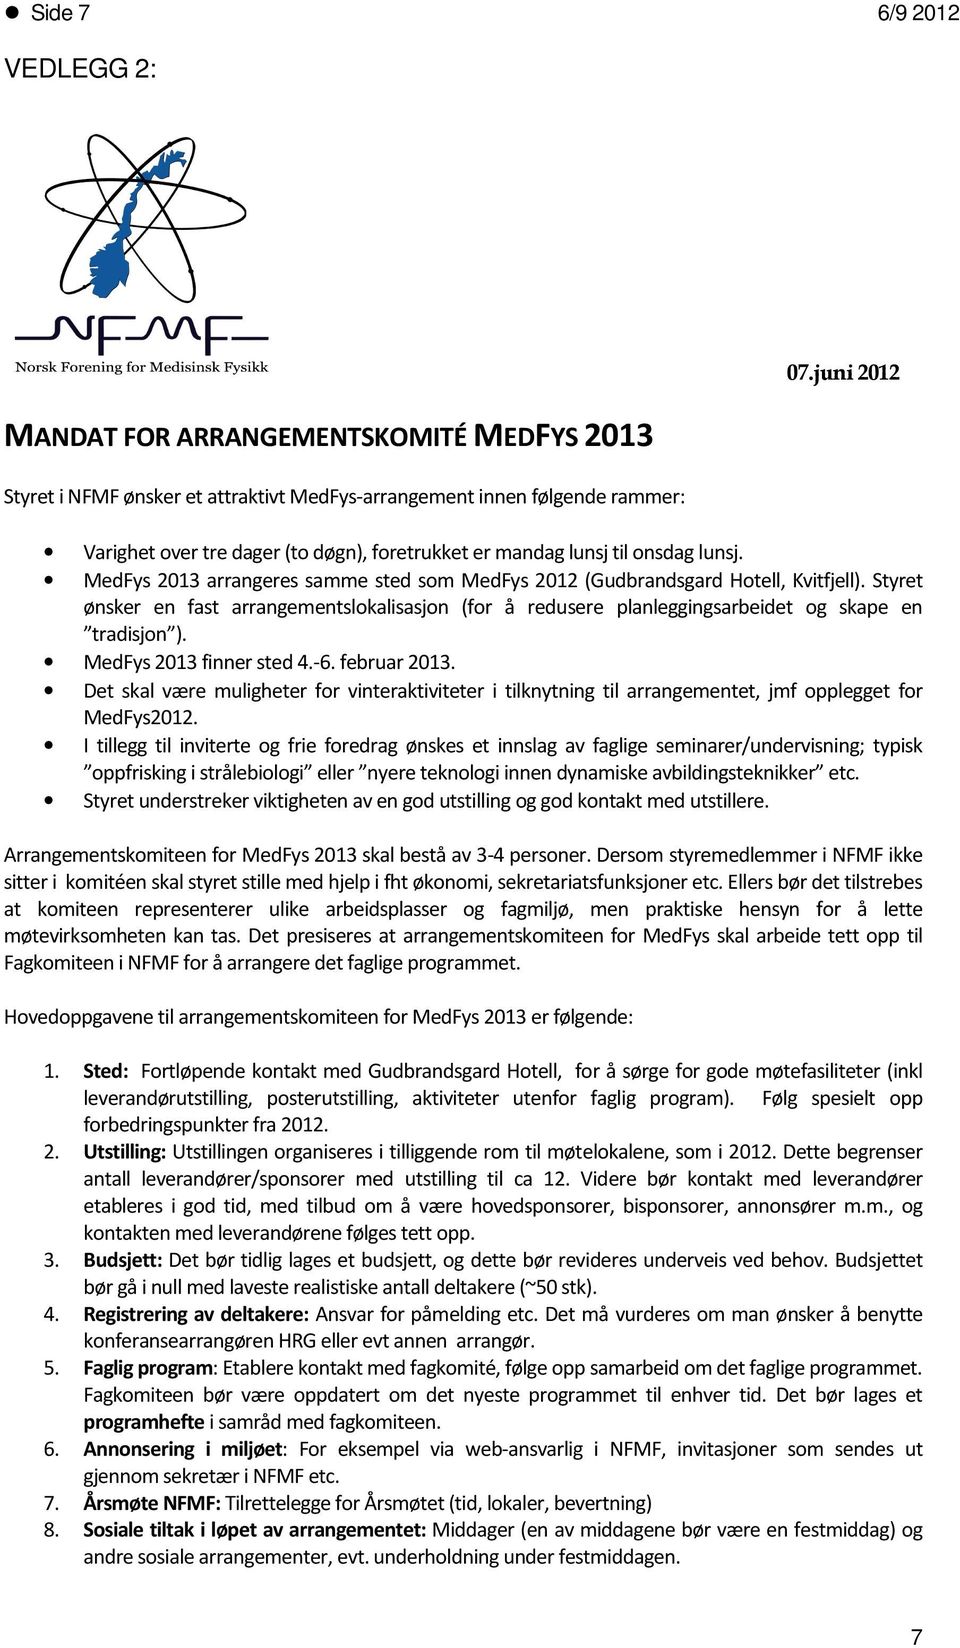 Styret ønsker en fast arrangementslokalisasjon (for å redusere planleggingsarbeidet og skape en tradisjon ). MedFys 2013 finner sted 4.-6. februar 2013.